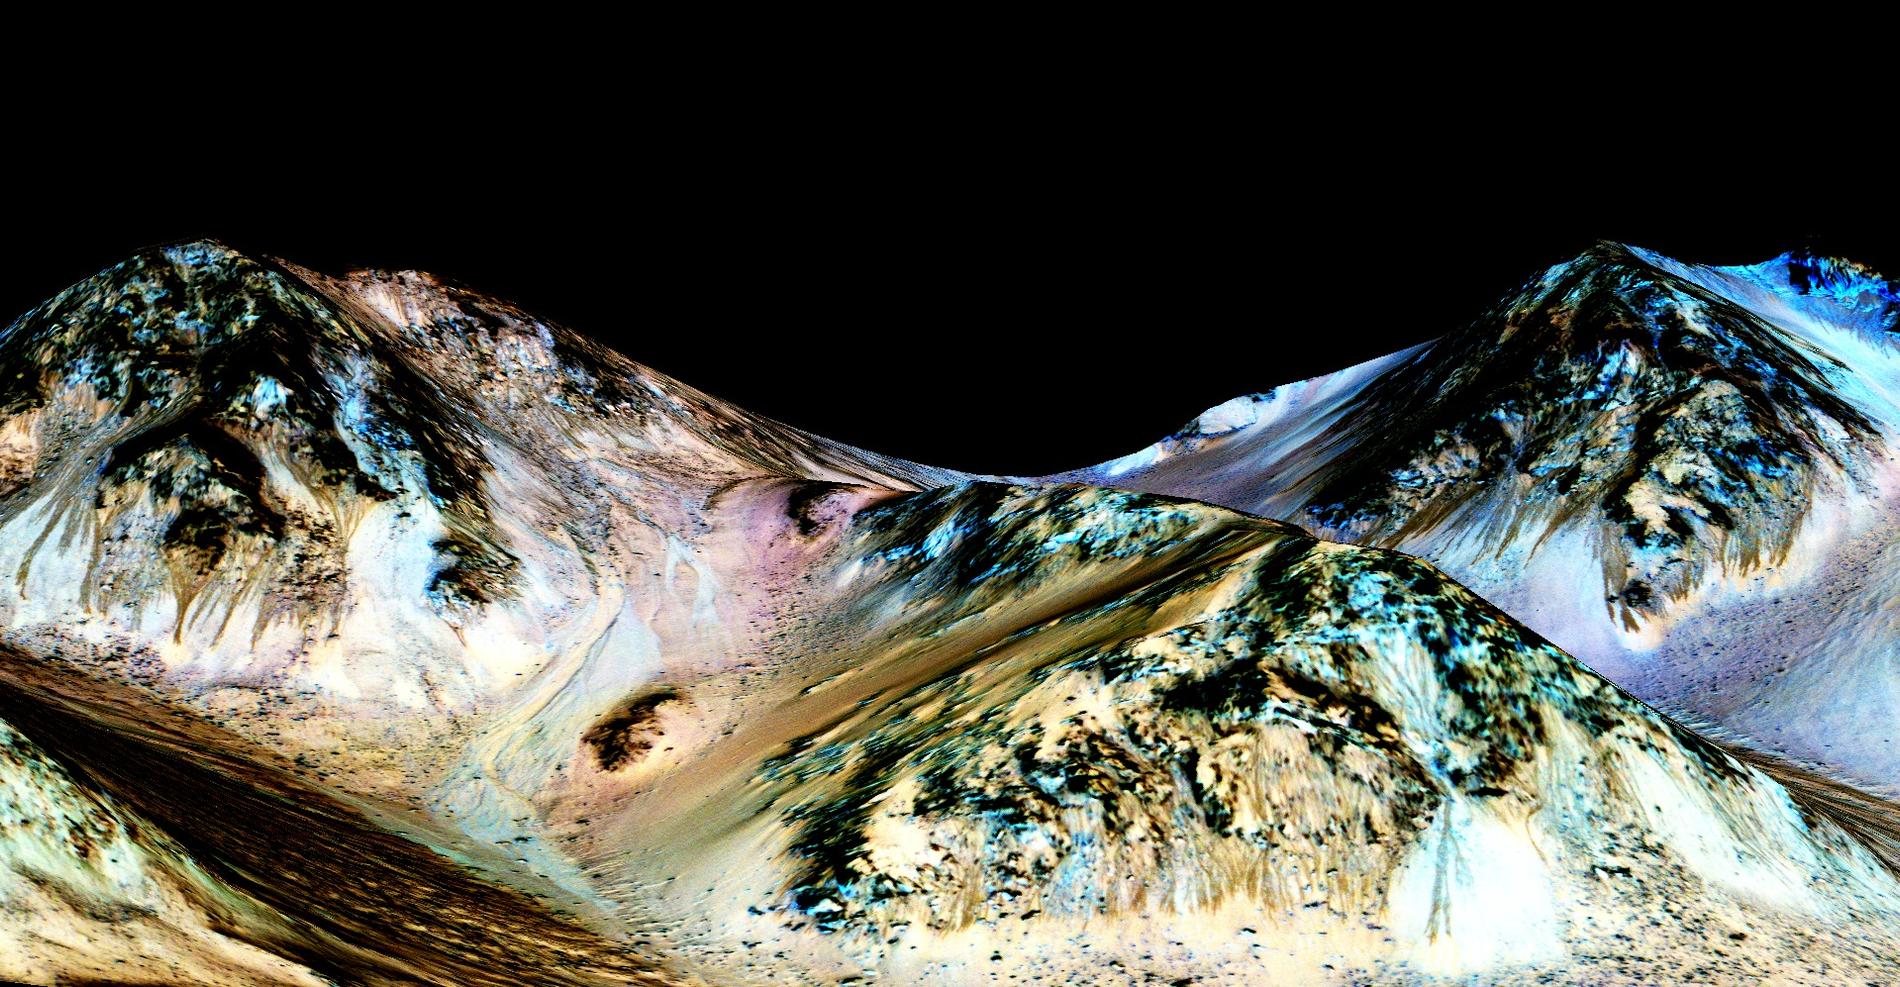 Längs branta sluttningar på Mars kan man se mörka stråk som ser ut som bäckfåror. Forskare har nu visat att fårorna innehåller saltlösningar som bildats helt nyligen, ett bevis för vatten på Mars idag.